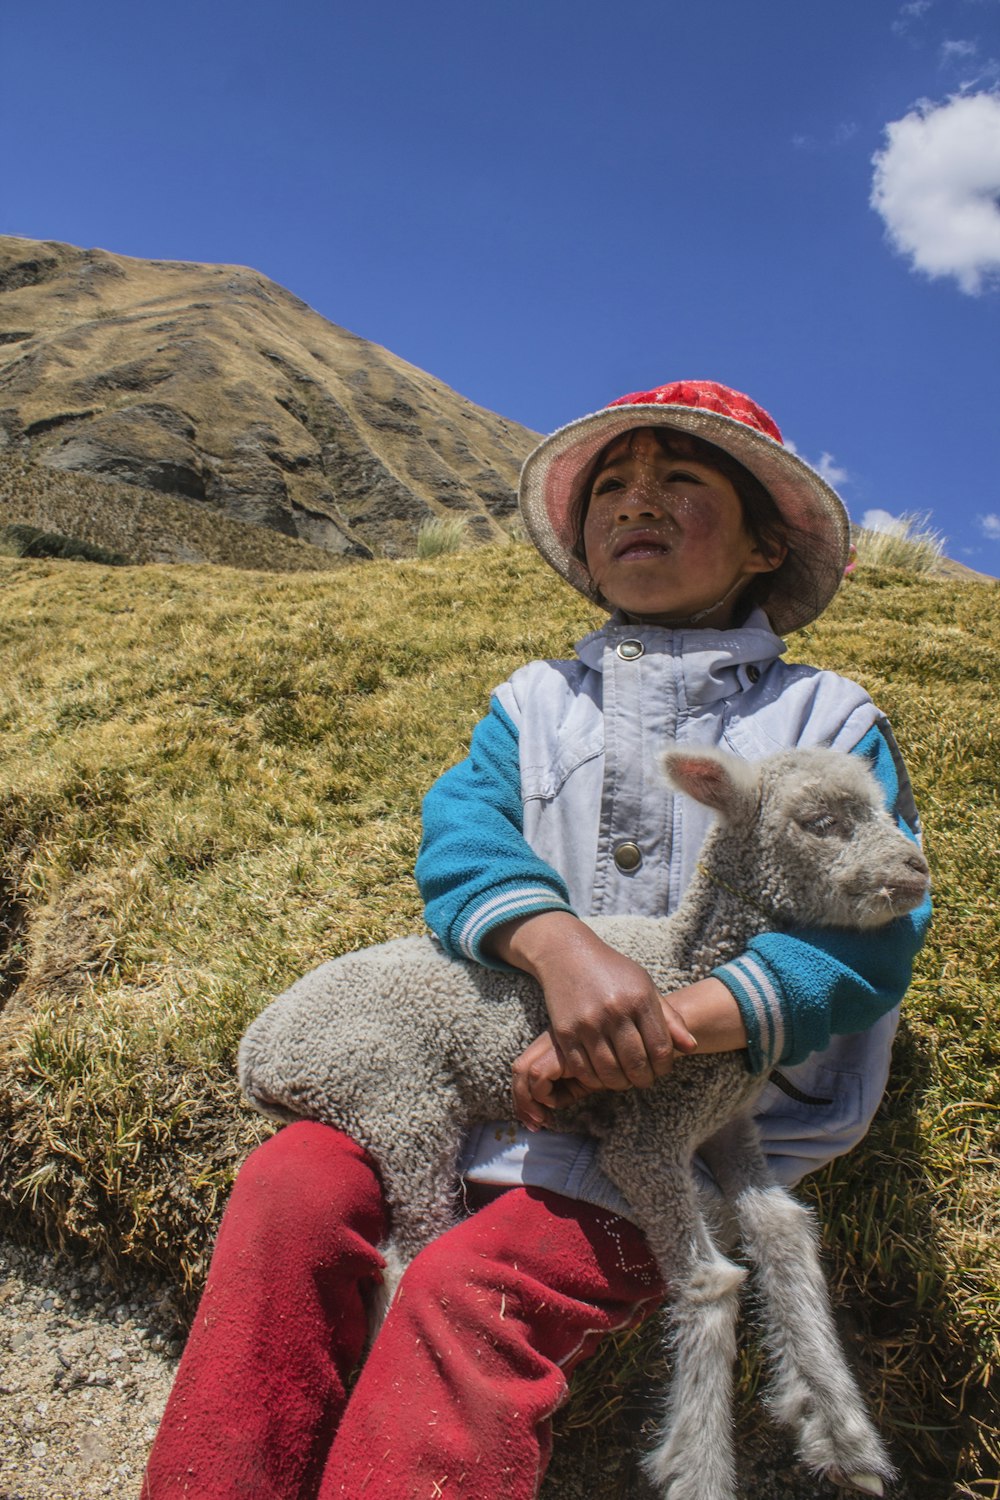 mouton blanc sur les genoux d’un garçon assis sur une colline